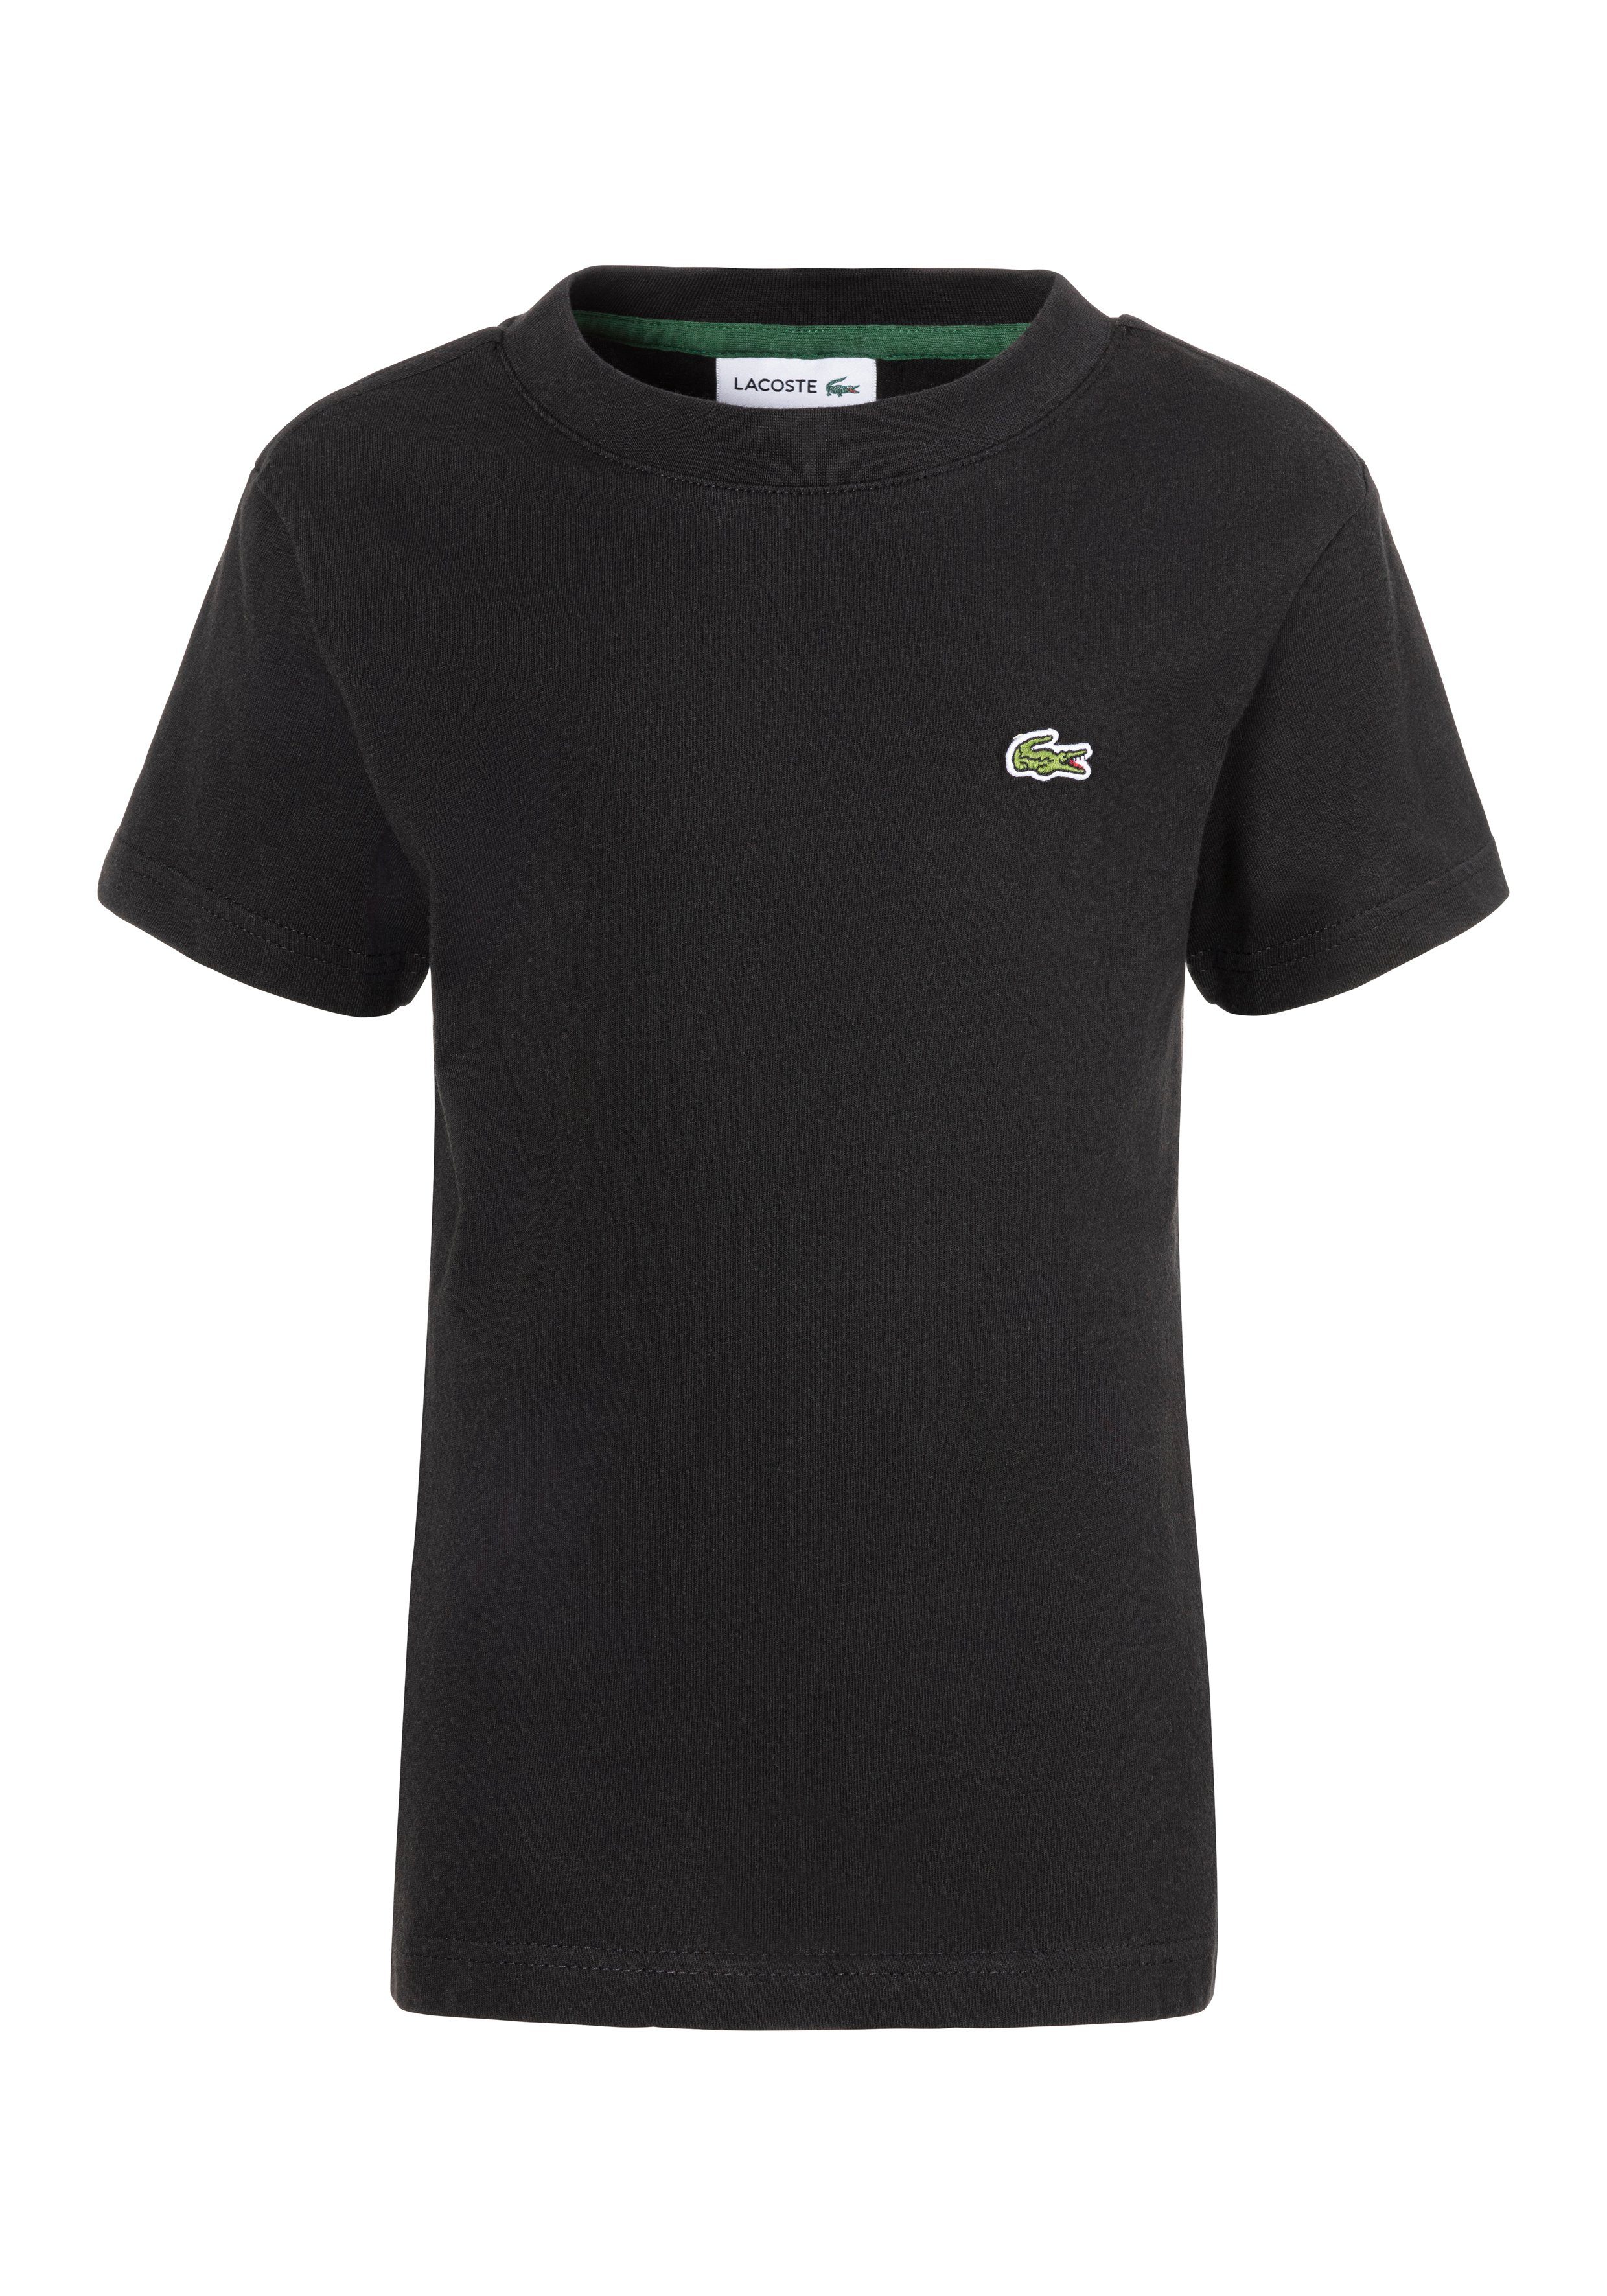 Lacoste T-shirt met logo zwart Biologisch katoen Ronde hals Logo 164